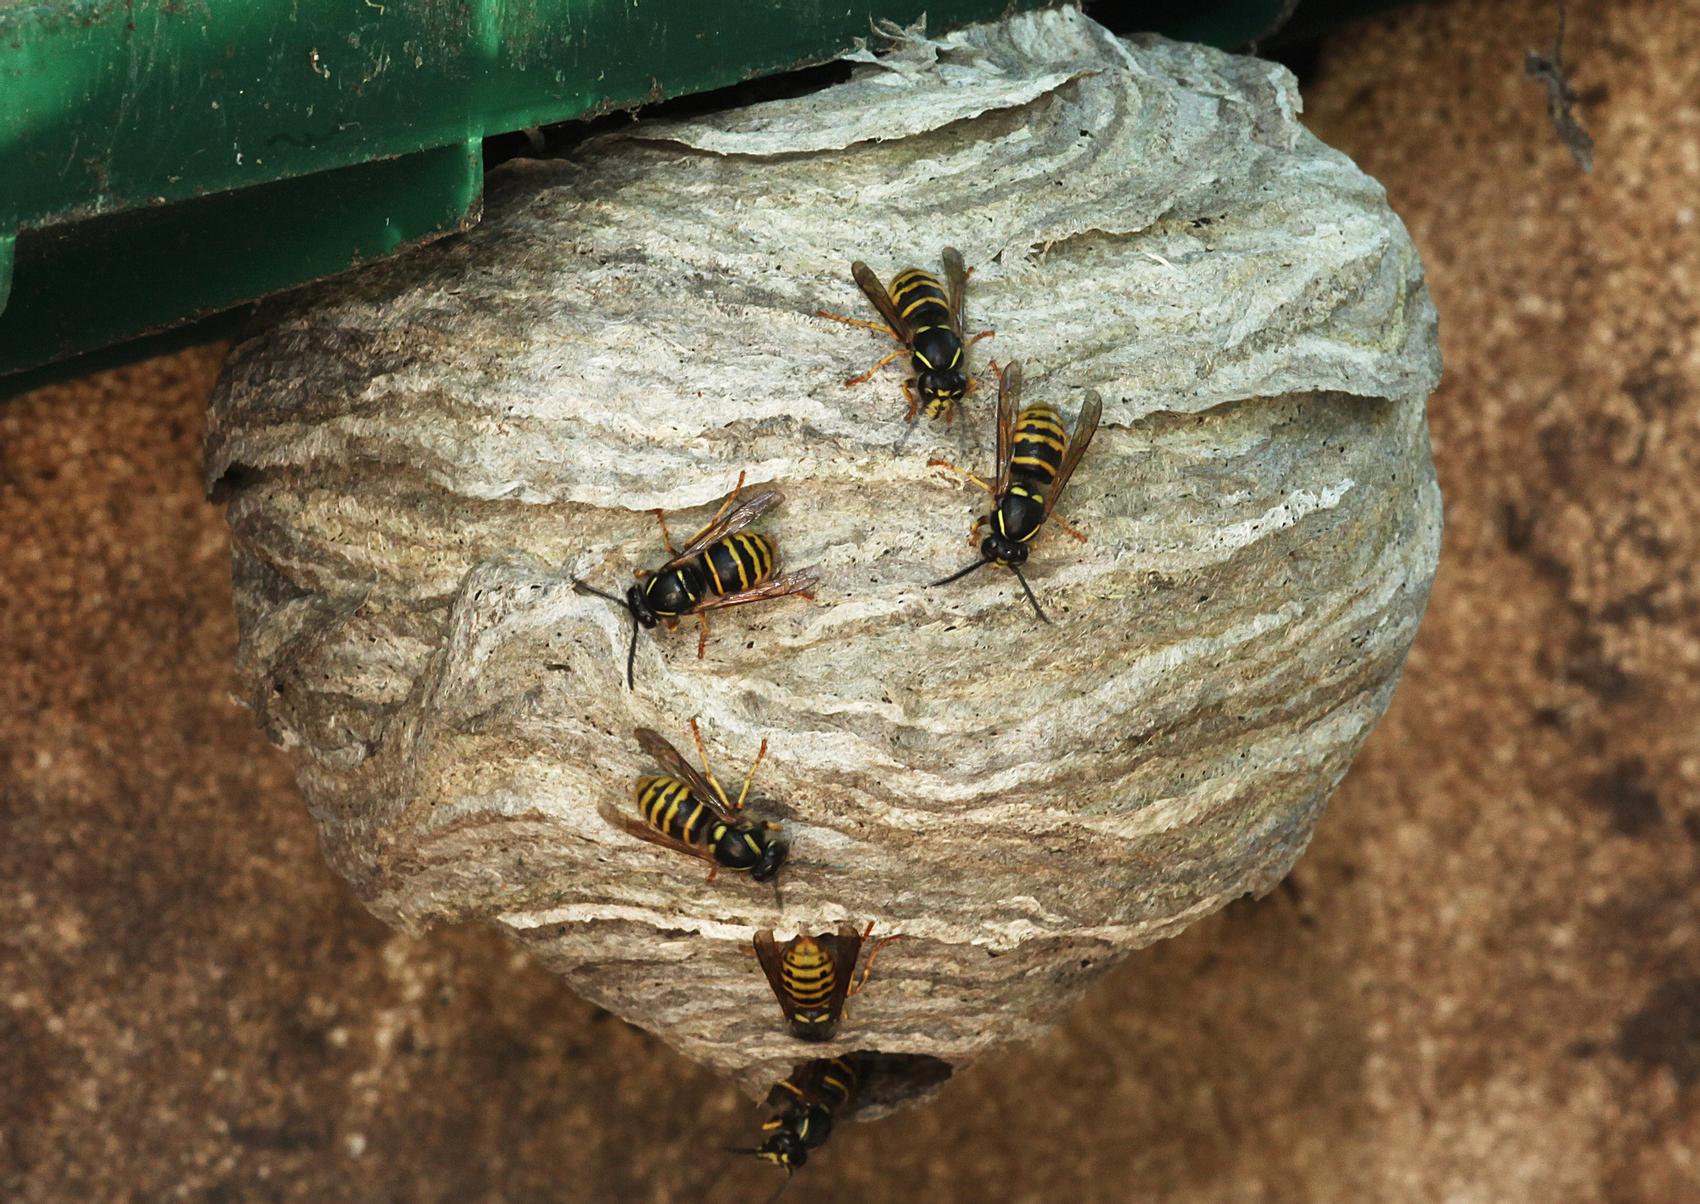 Mikä on tehokkain tapa torjua ampiaiset? | Meillä kotona